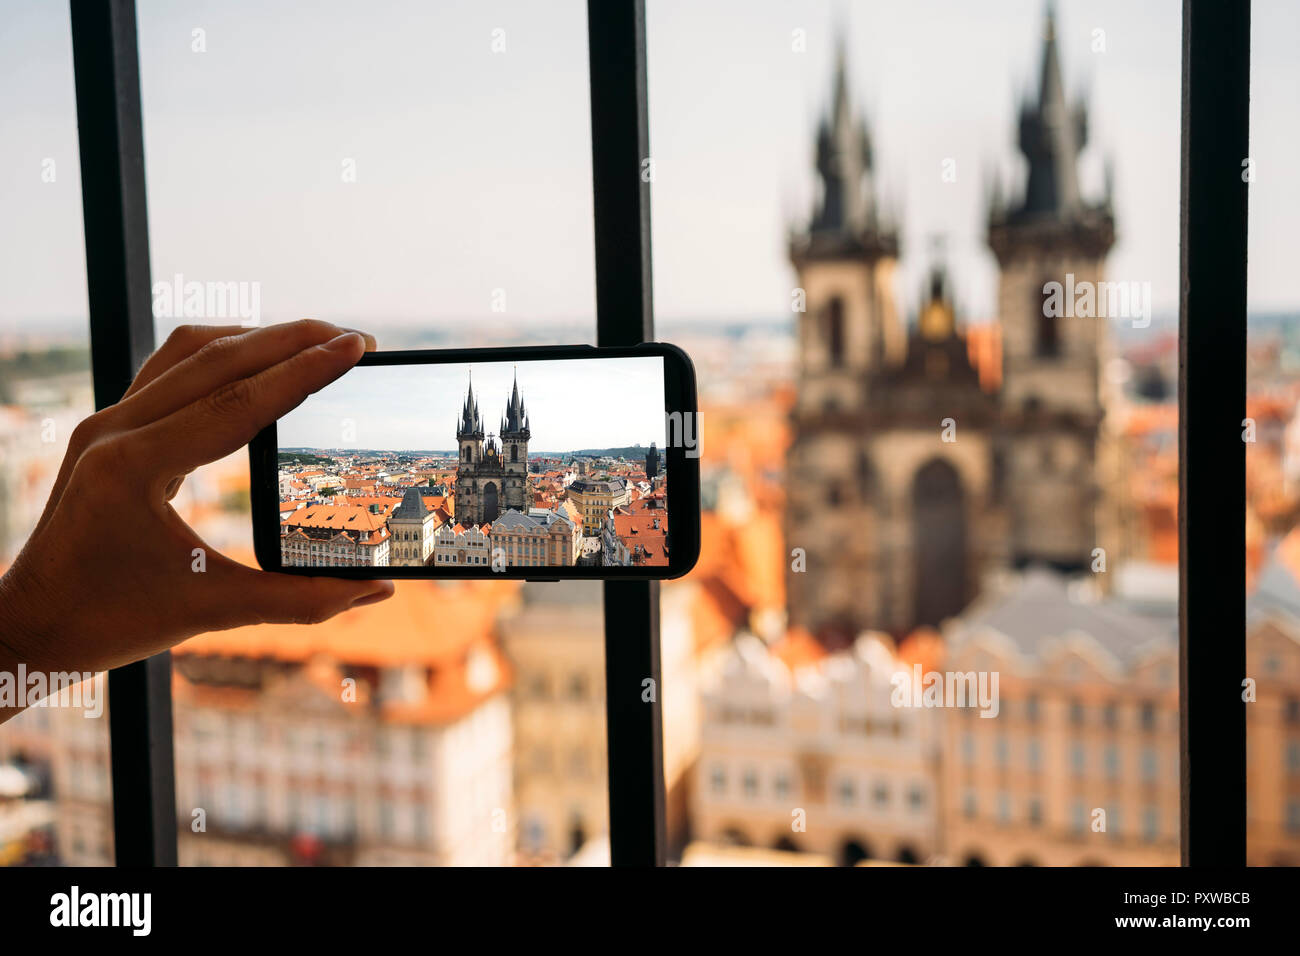 République tchèque, Prague, woman taking photo d'église Notre Dame de l'ancien hôtel de ville avec smartphone, vue partielle Banque D'Images